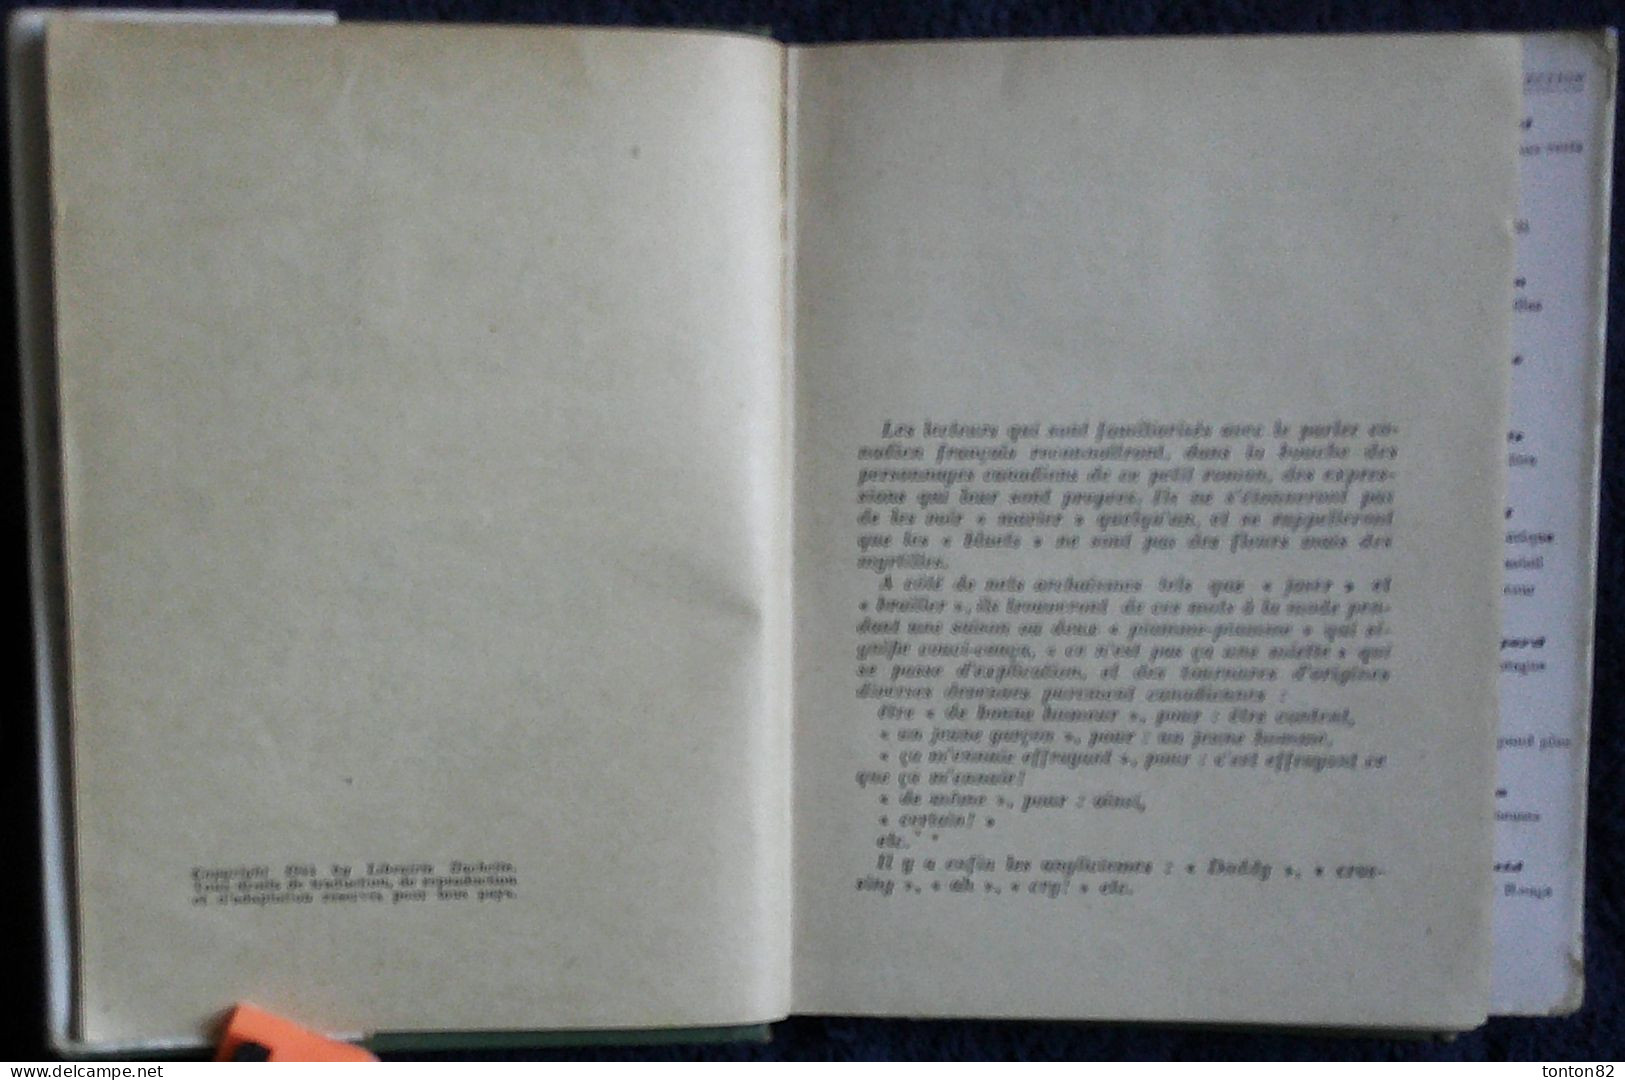 Nanine Grûner - La Maison De L'Indienne - Hachette / Bibliothèque Verte - ( 1953 ) - Bibliotheque Verte